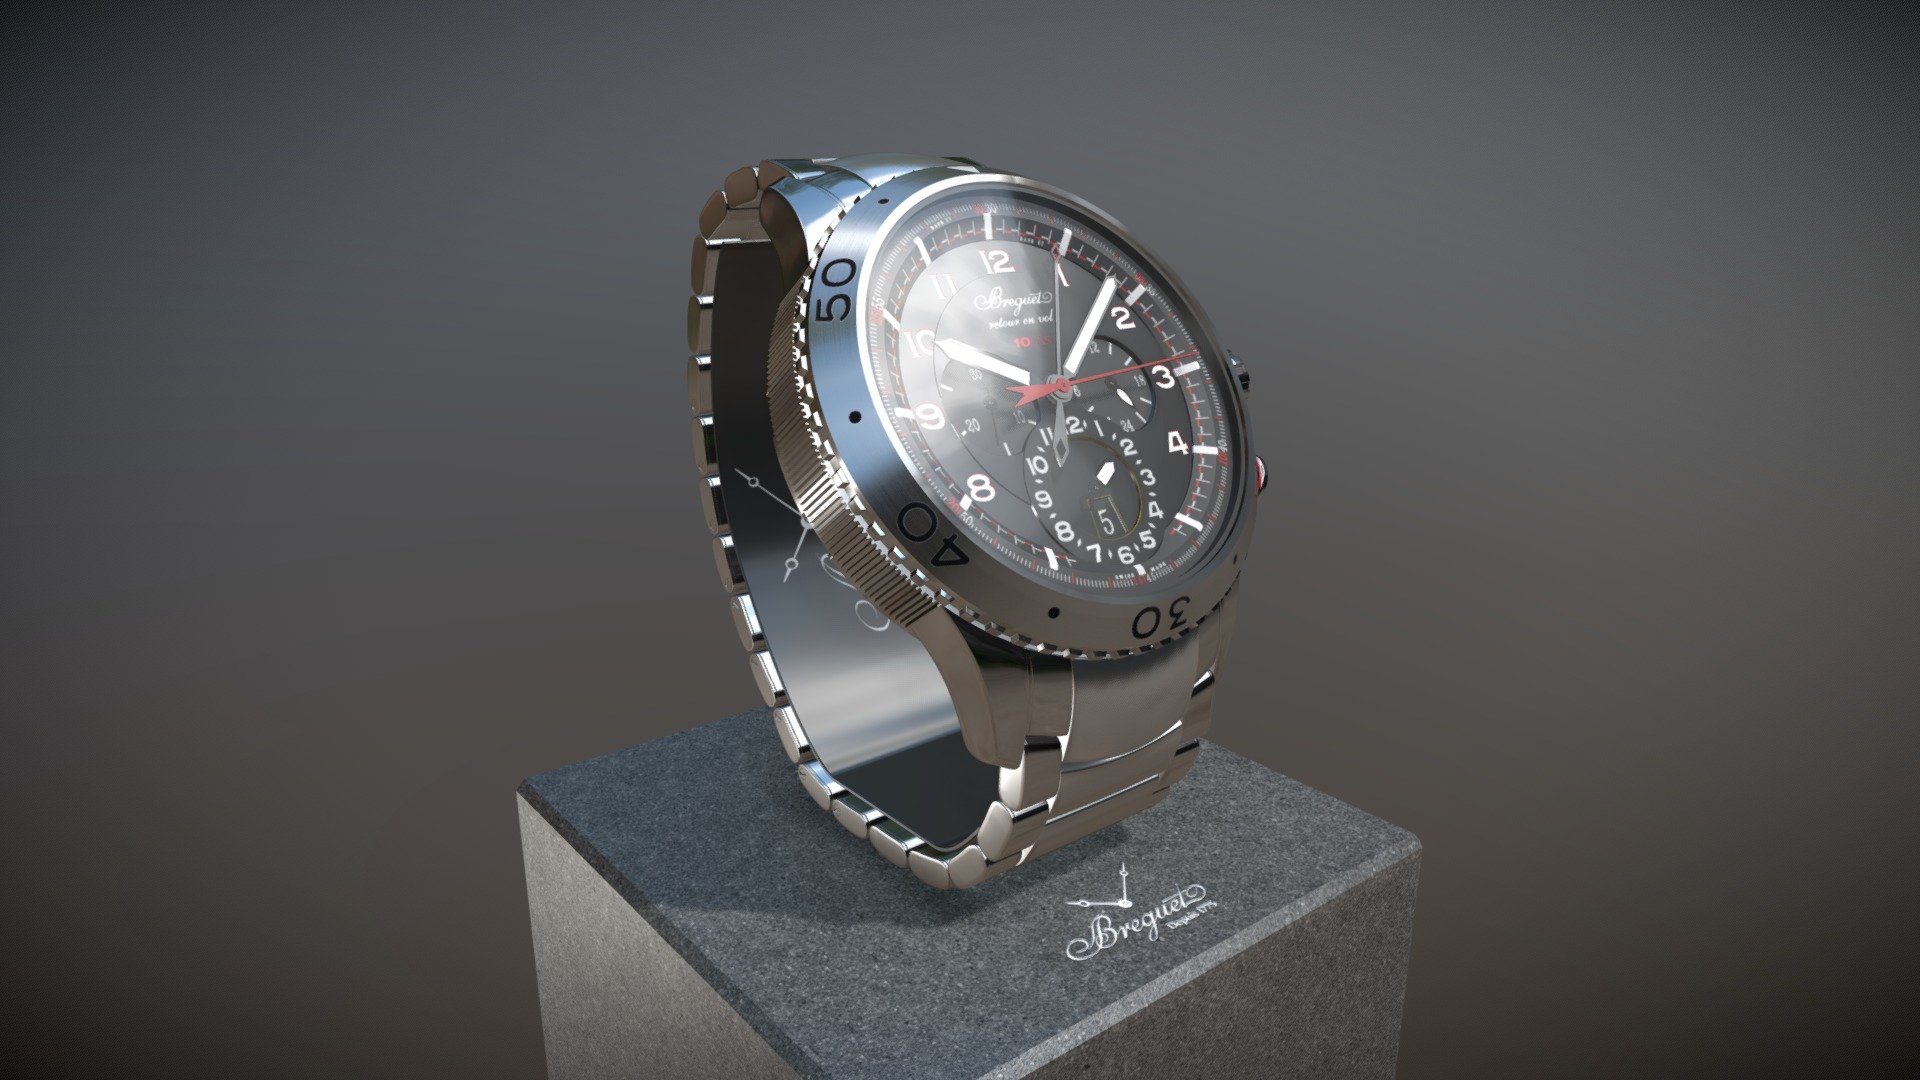 Watch - Type XXII 3880 - Breguet - 3D model by Weisenberg [211affc ...